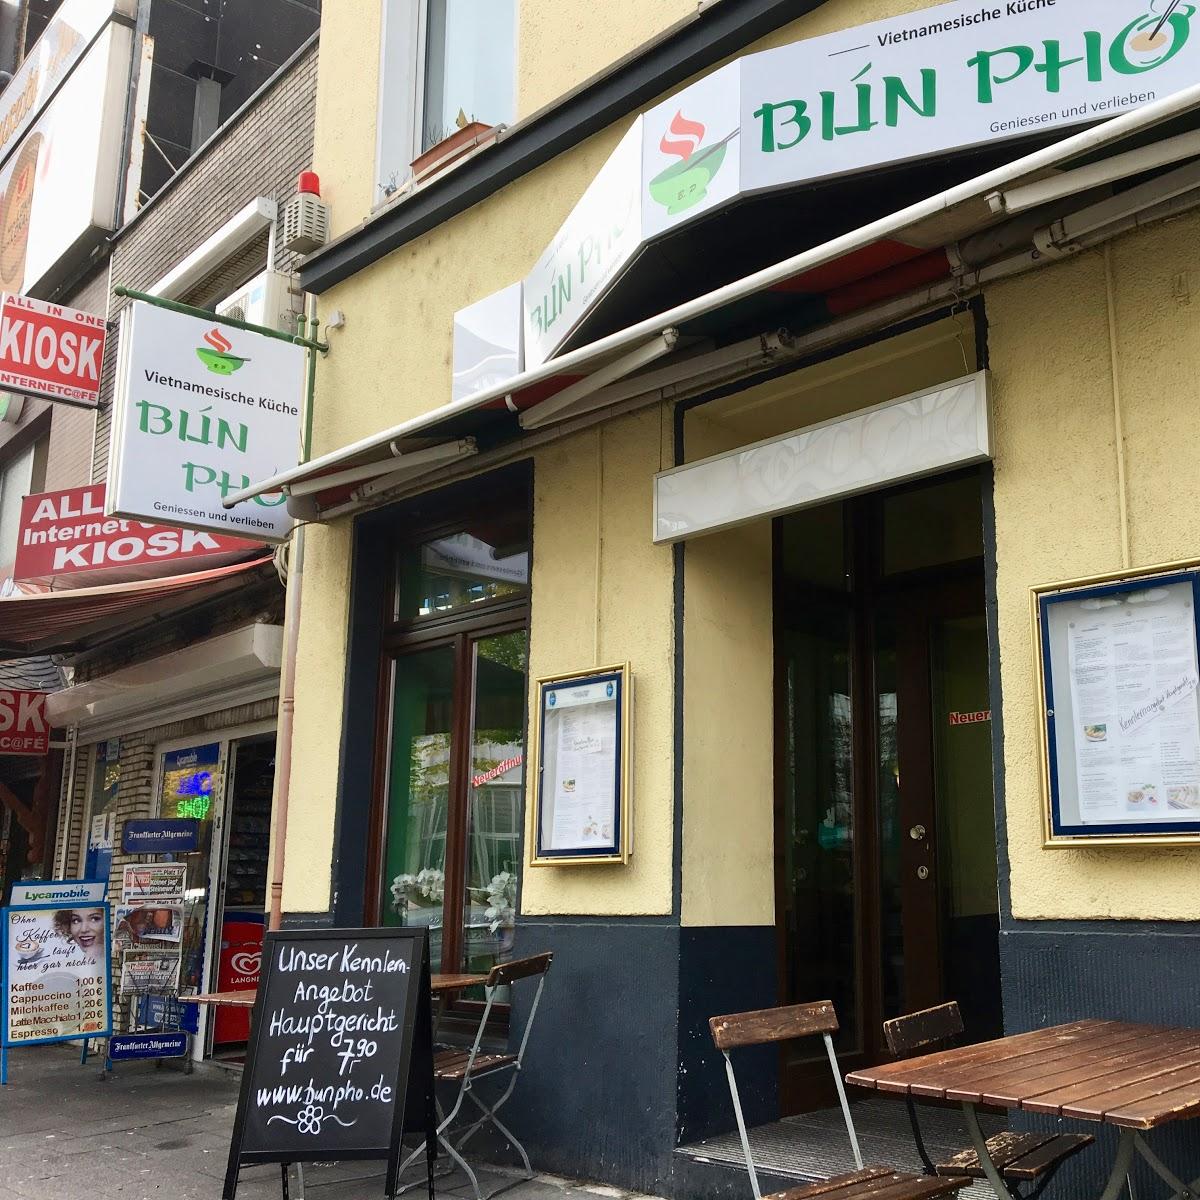 Restaurant "Bún Ph - Vietnamesische Küche" in Köln